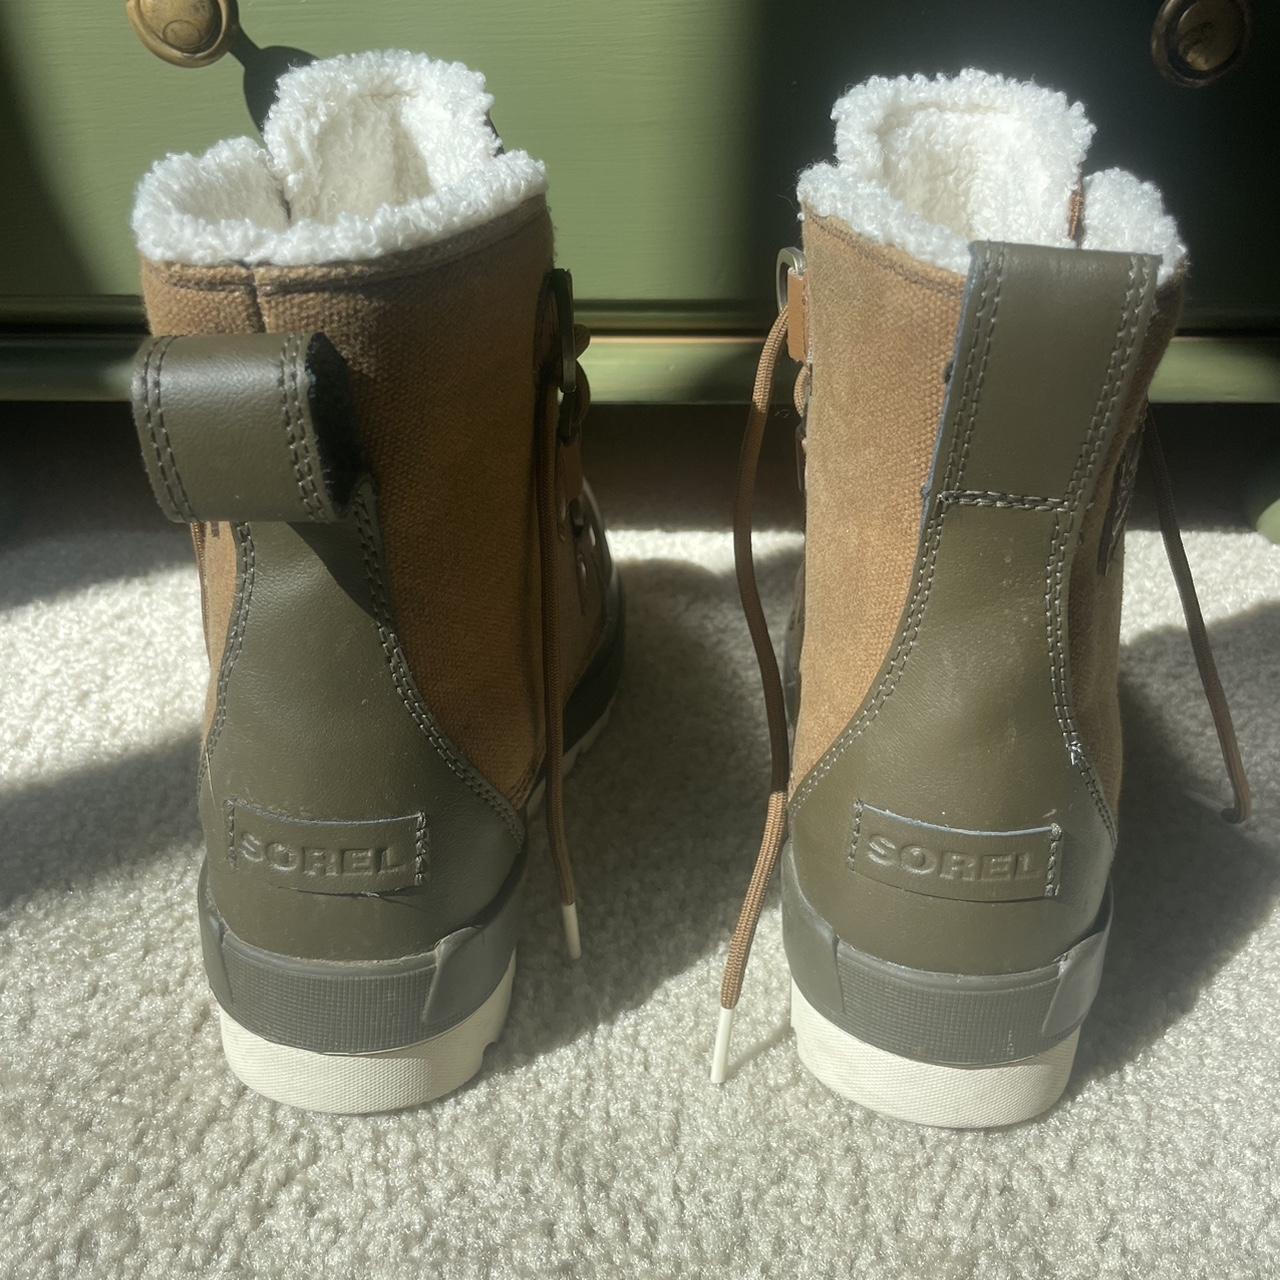 Sorel Women's Boots (5)